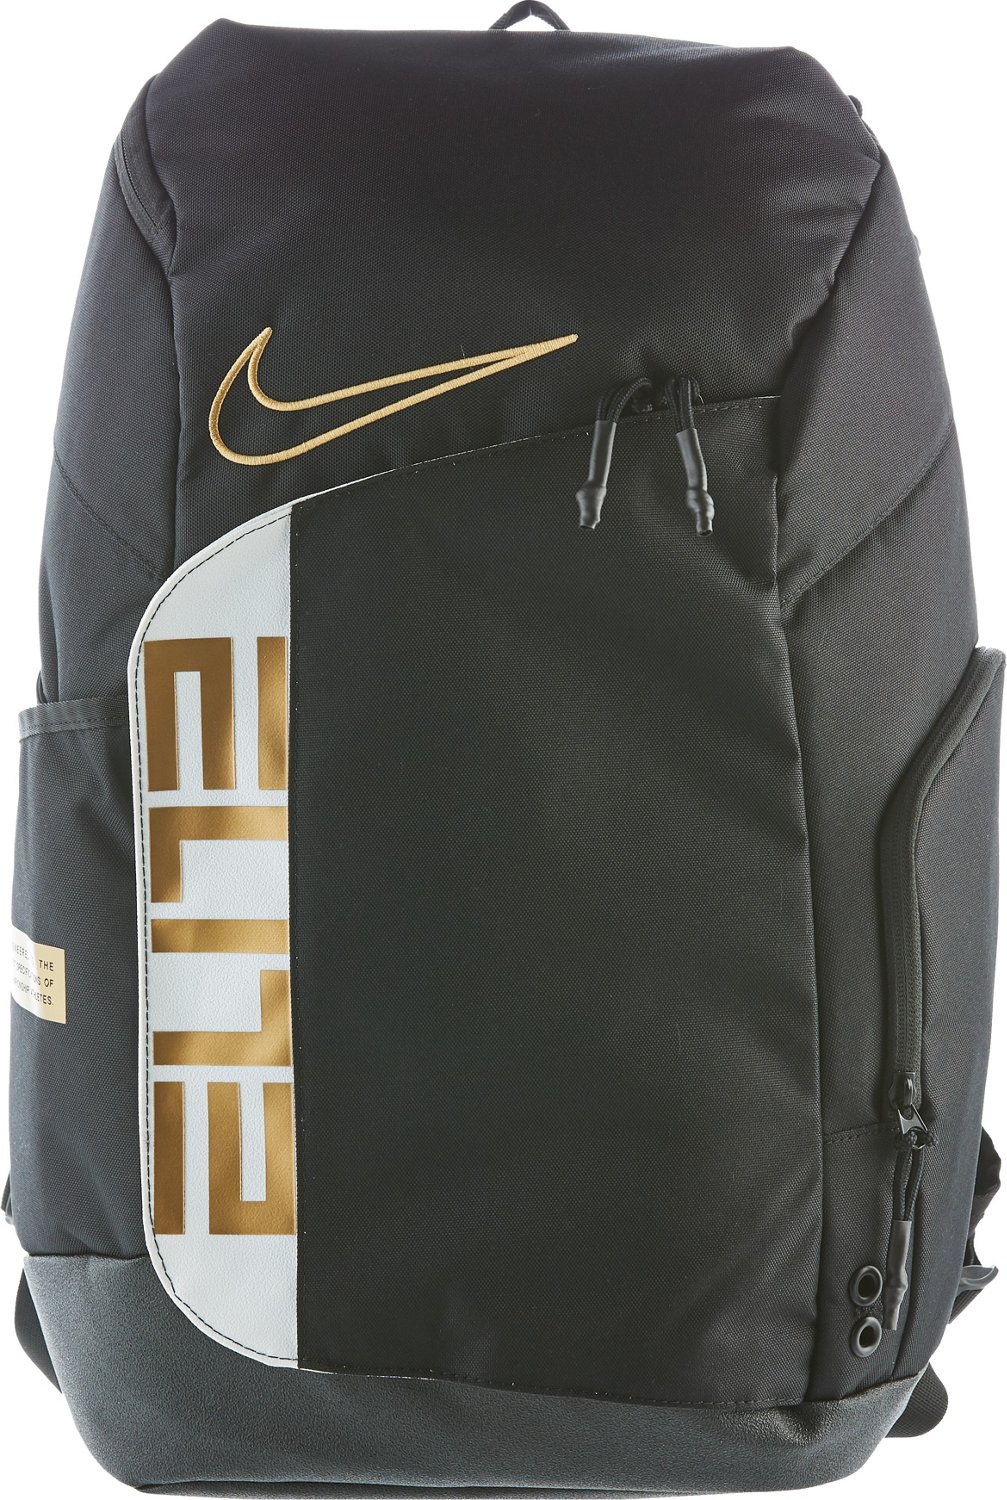 Nike Pro Basketball Backpack | Academy